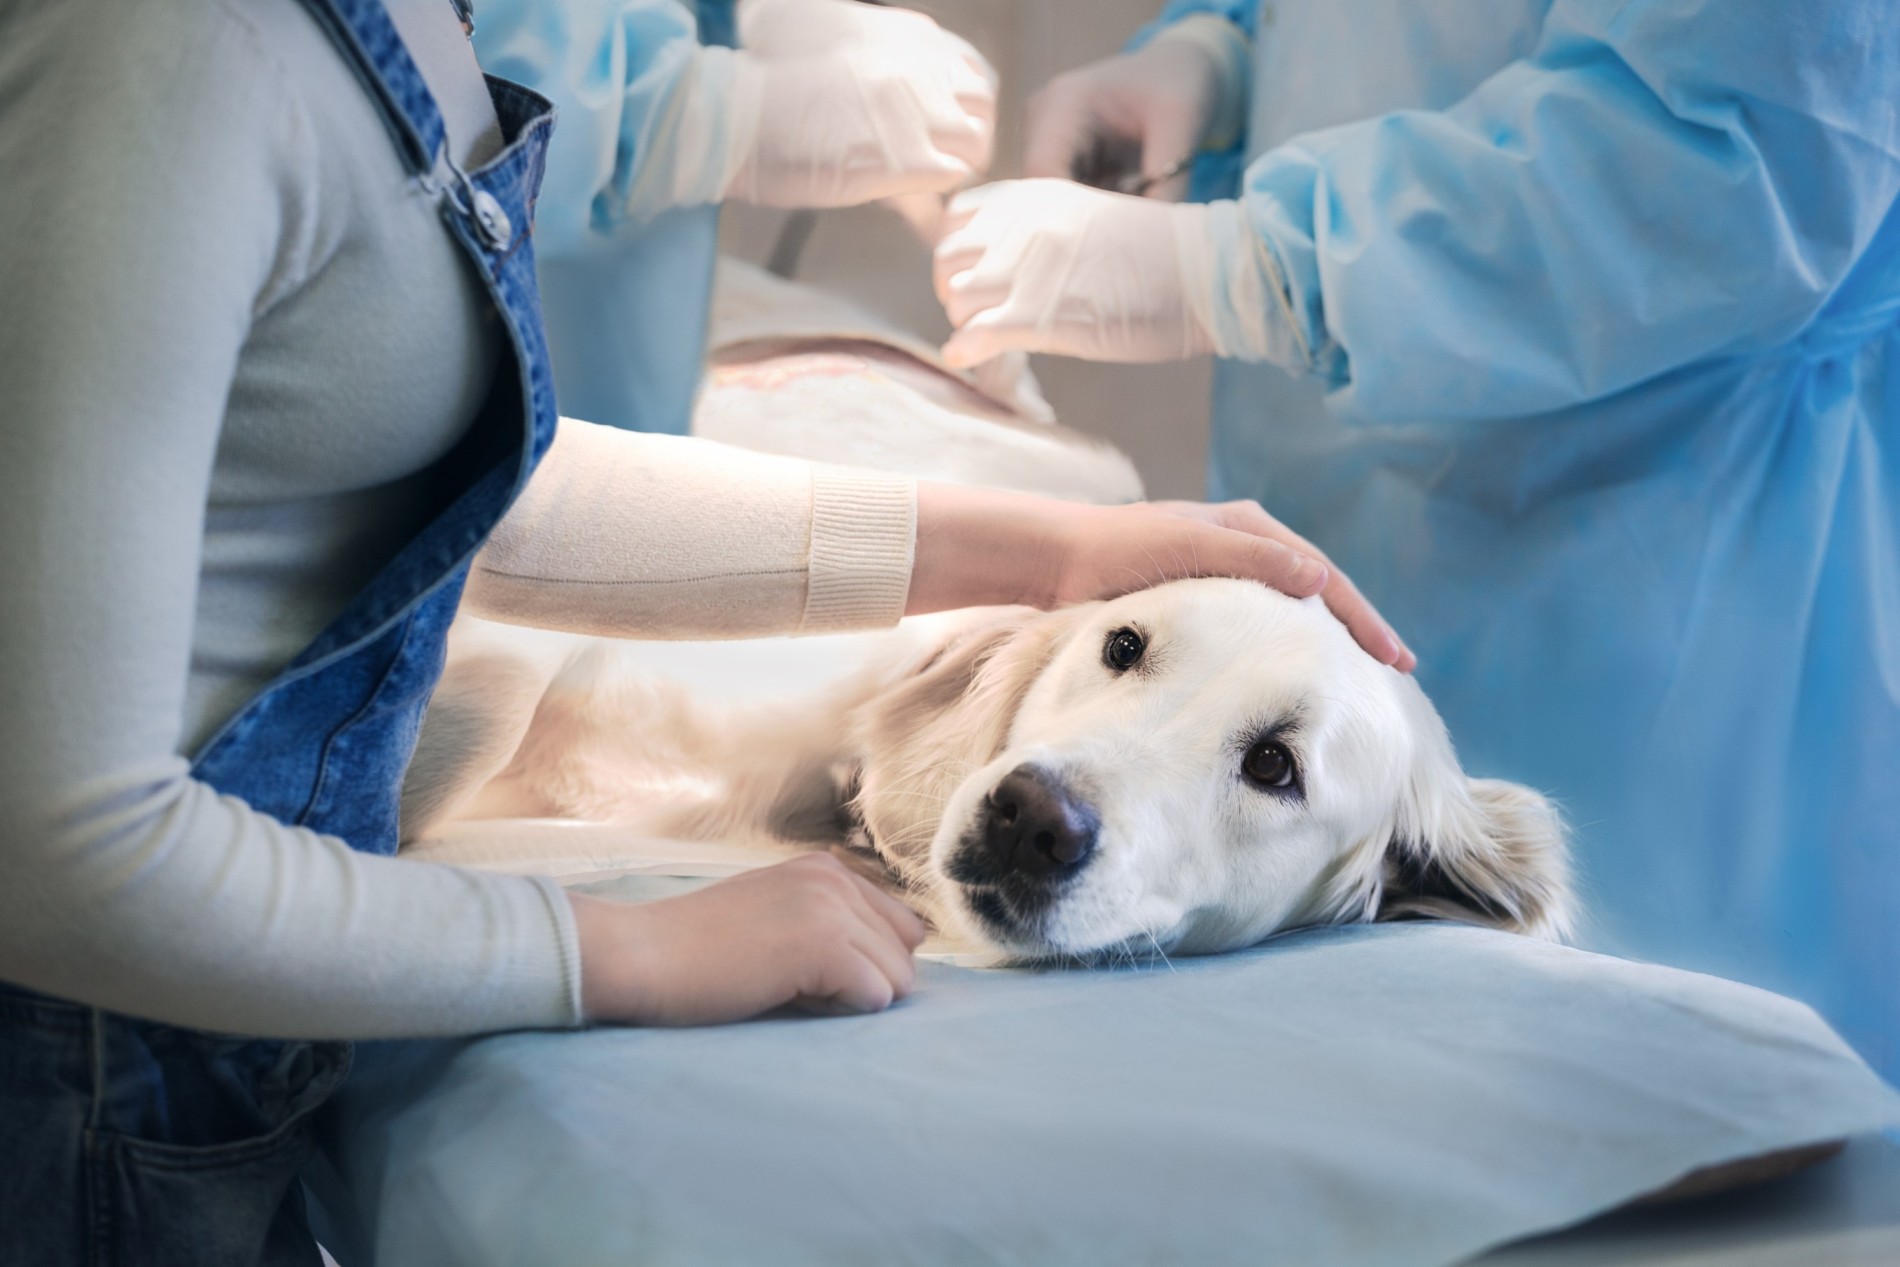 A Golden Retriever undergoing surgery at a vet's clinic